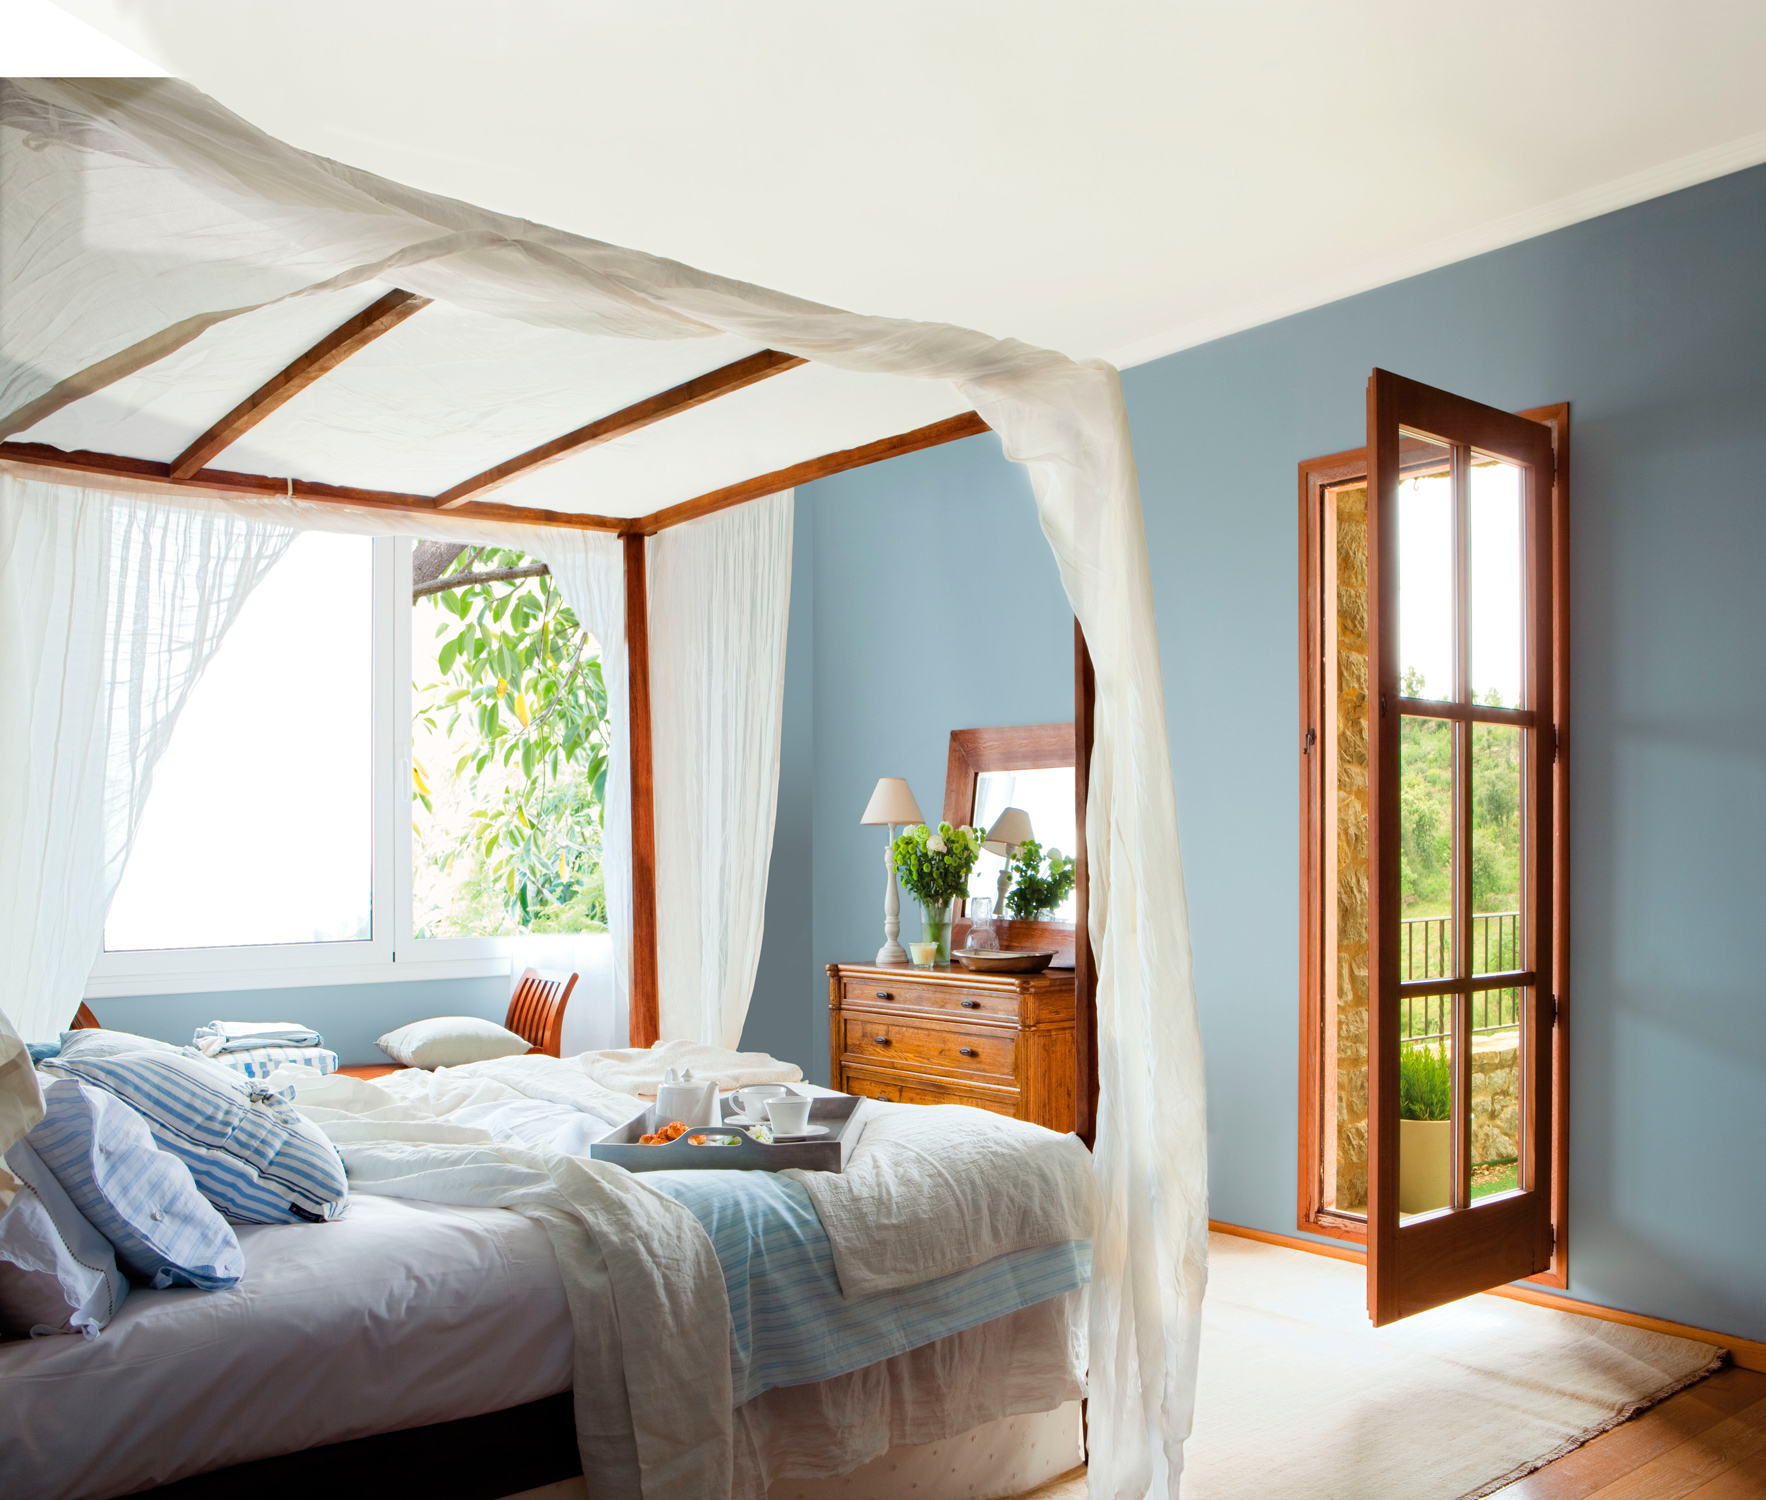 Dormitorio de verano con dosel de madera y pared en azul.